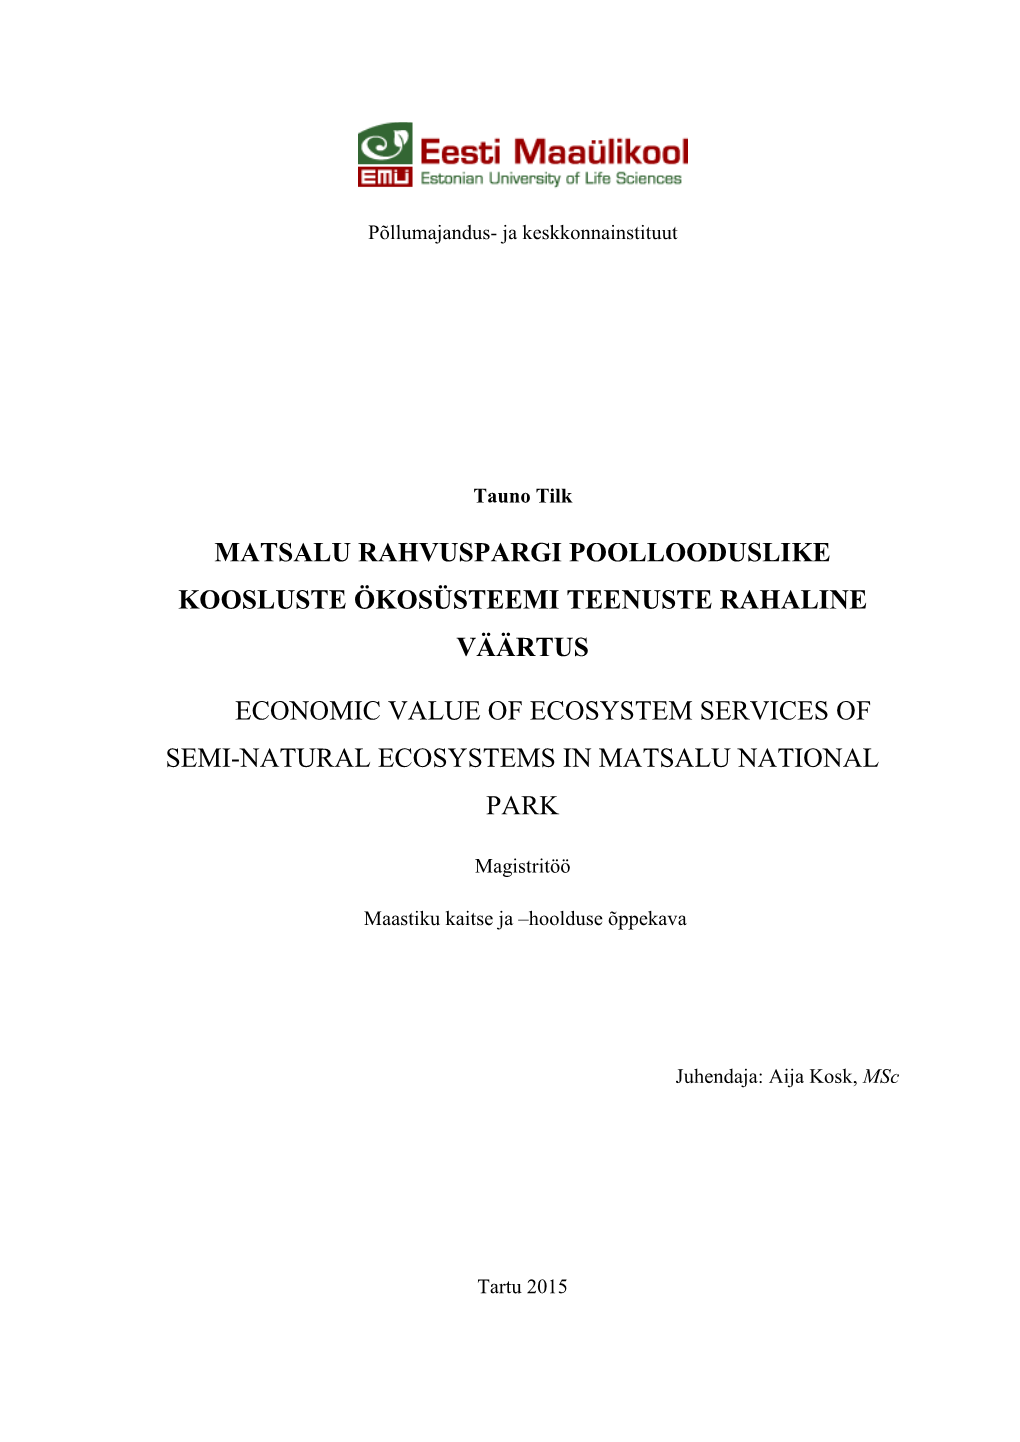 Matsalu Rahvuspargi Poollooduslike Koosluste Ökosüsteemi Teenuste Rahaline Väärtus